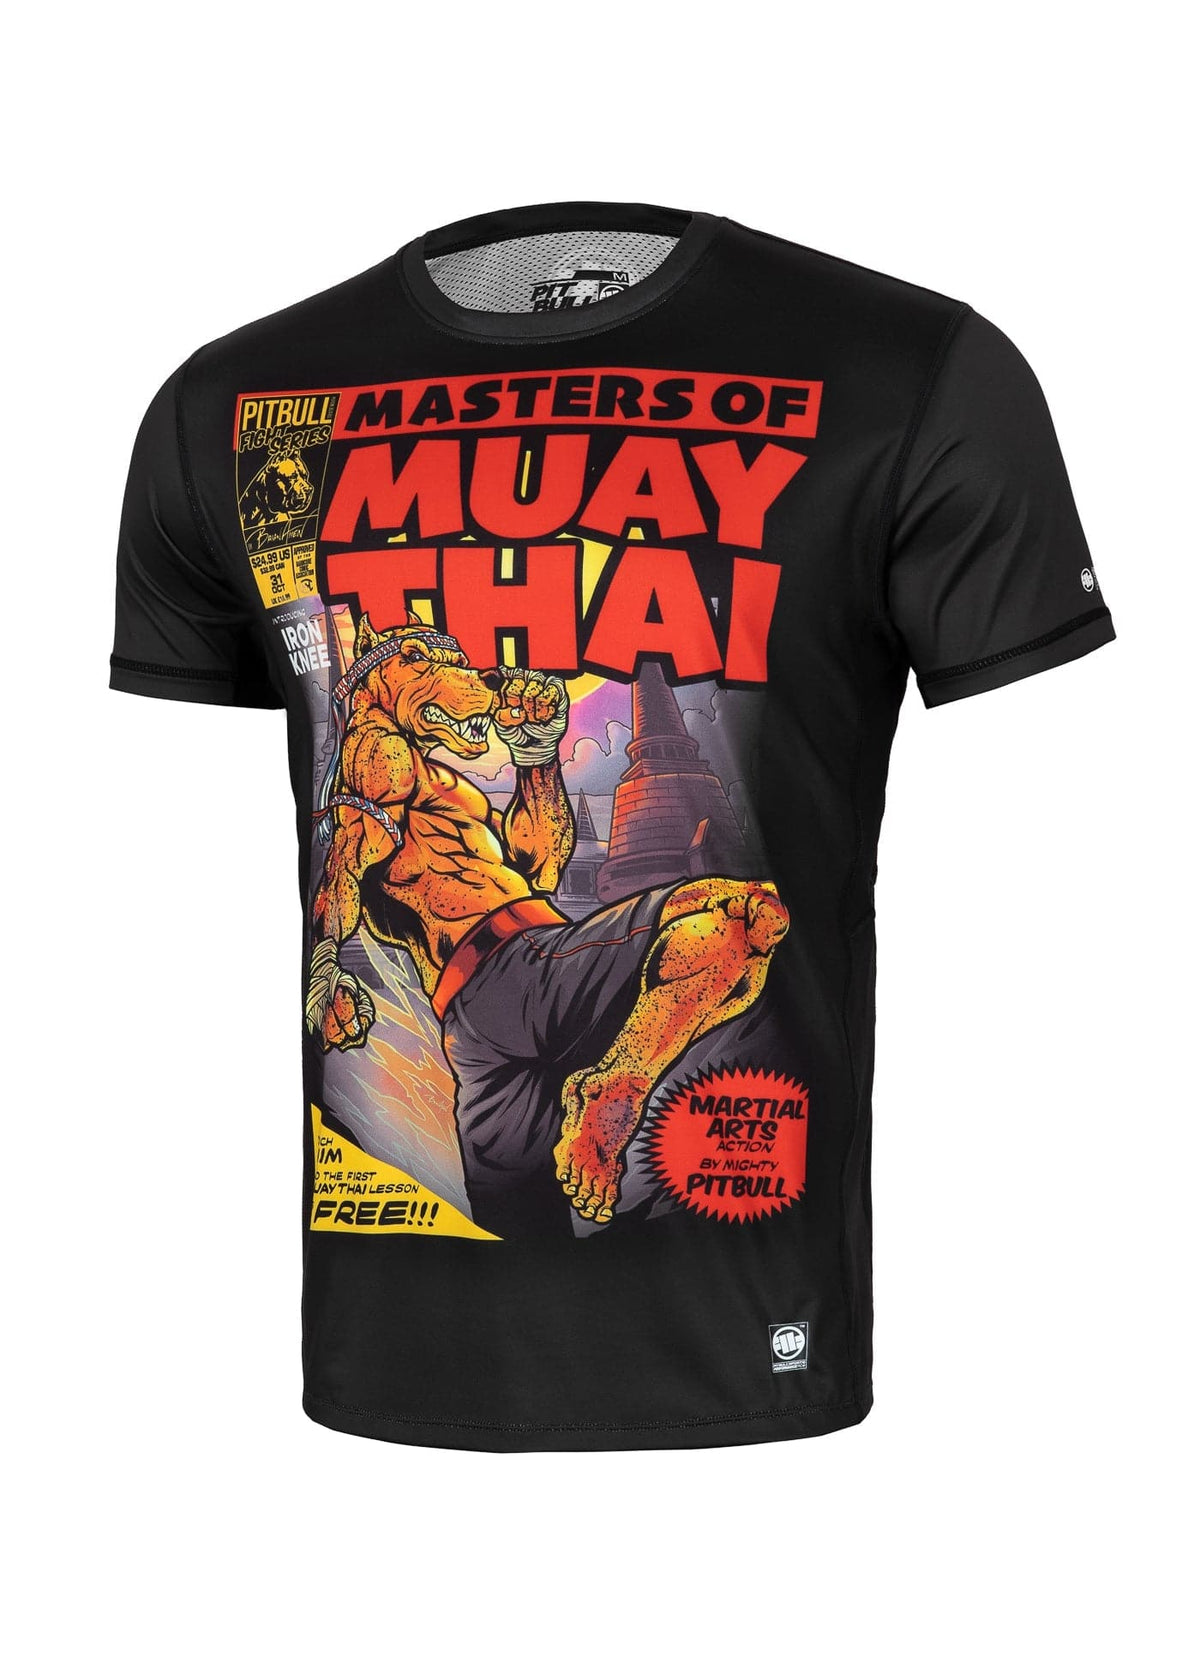 MASTERS OF MUAY THAI Black Mesh T-shirt.